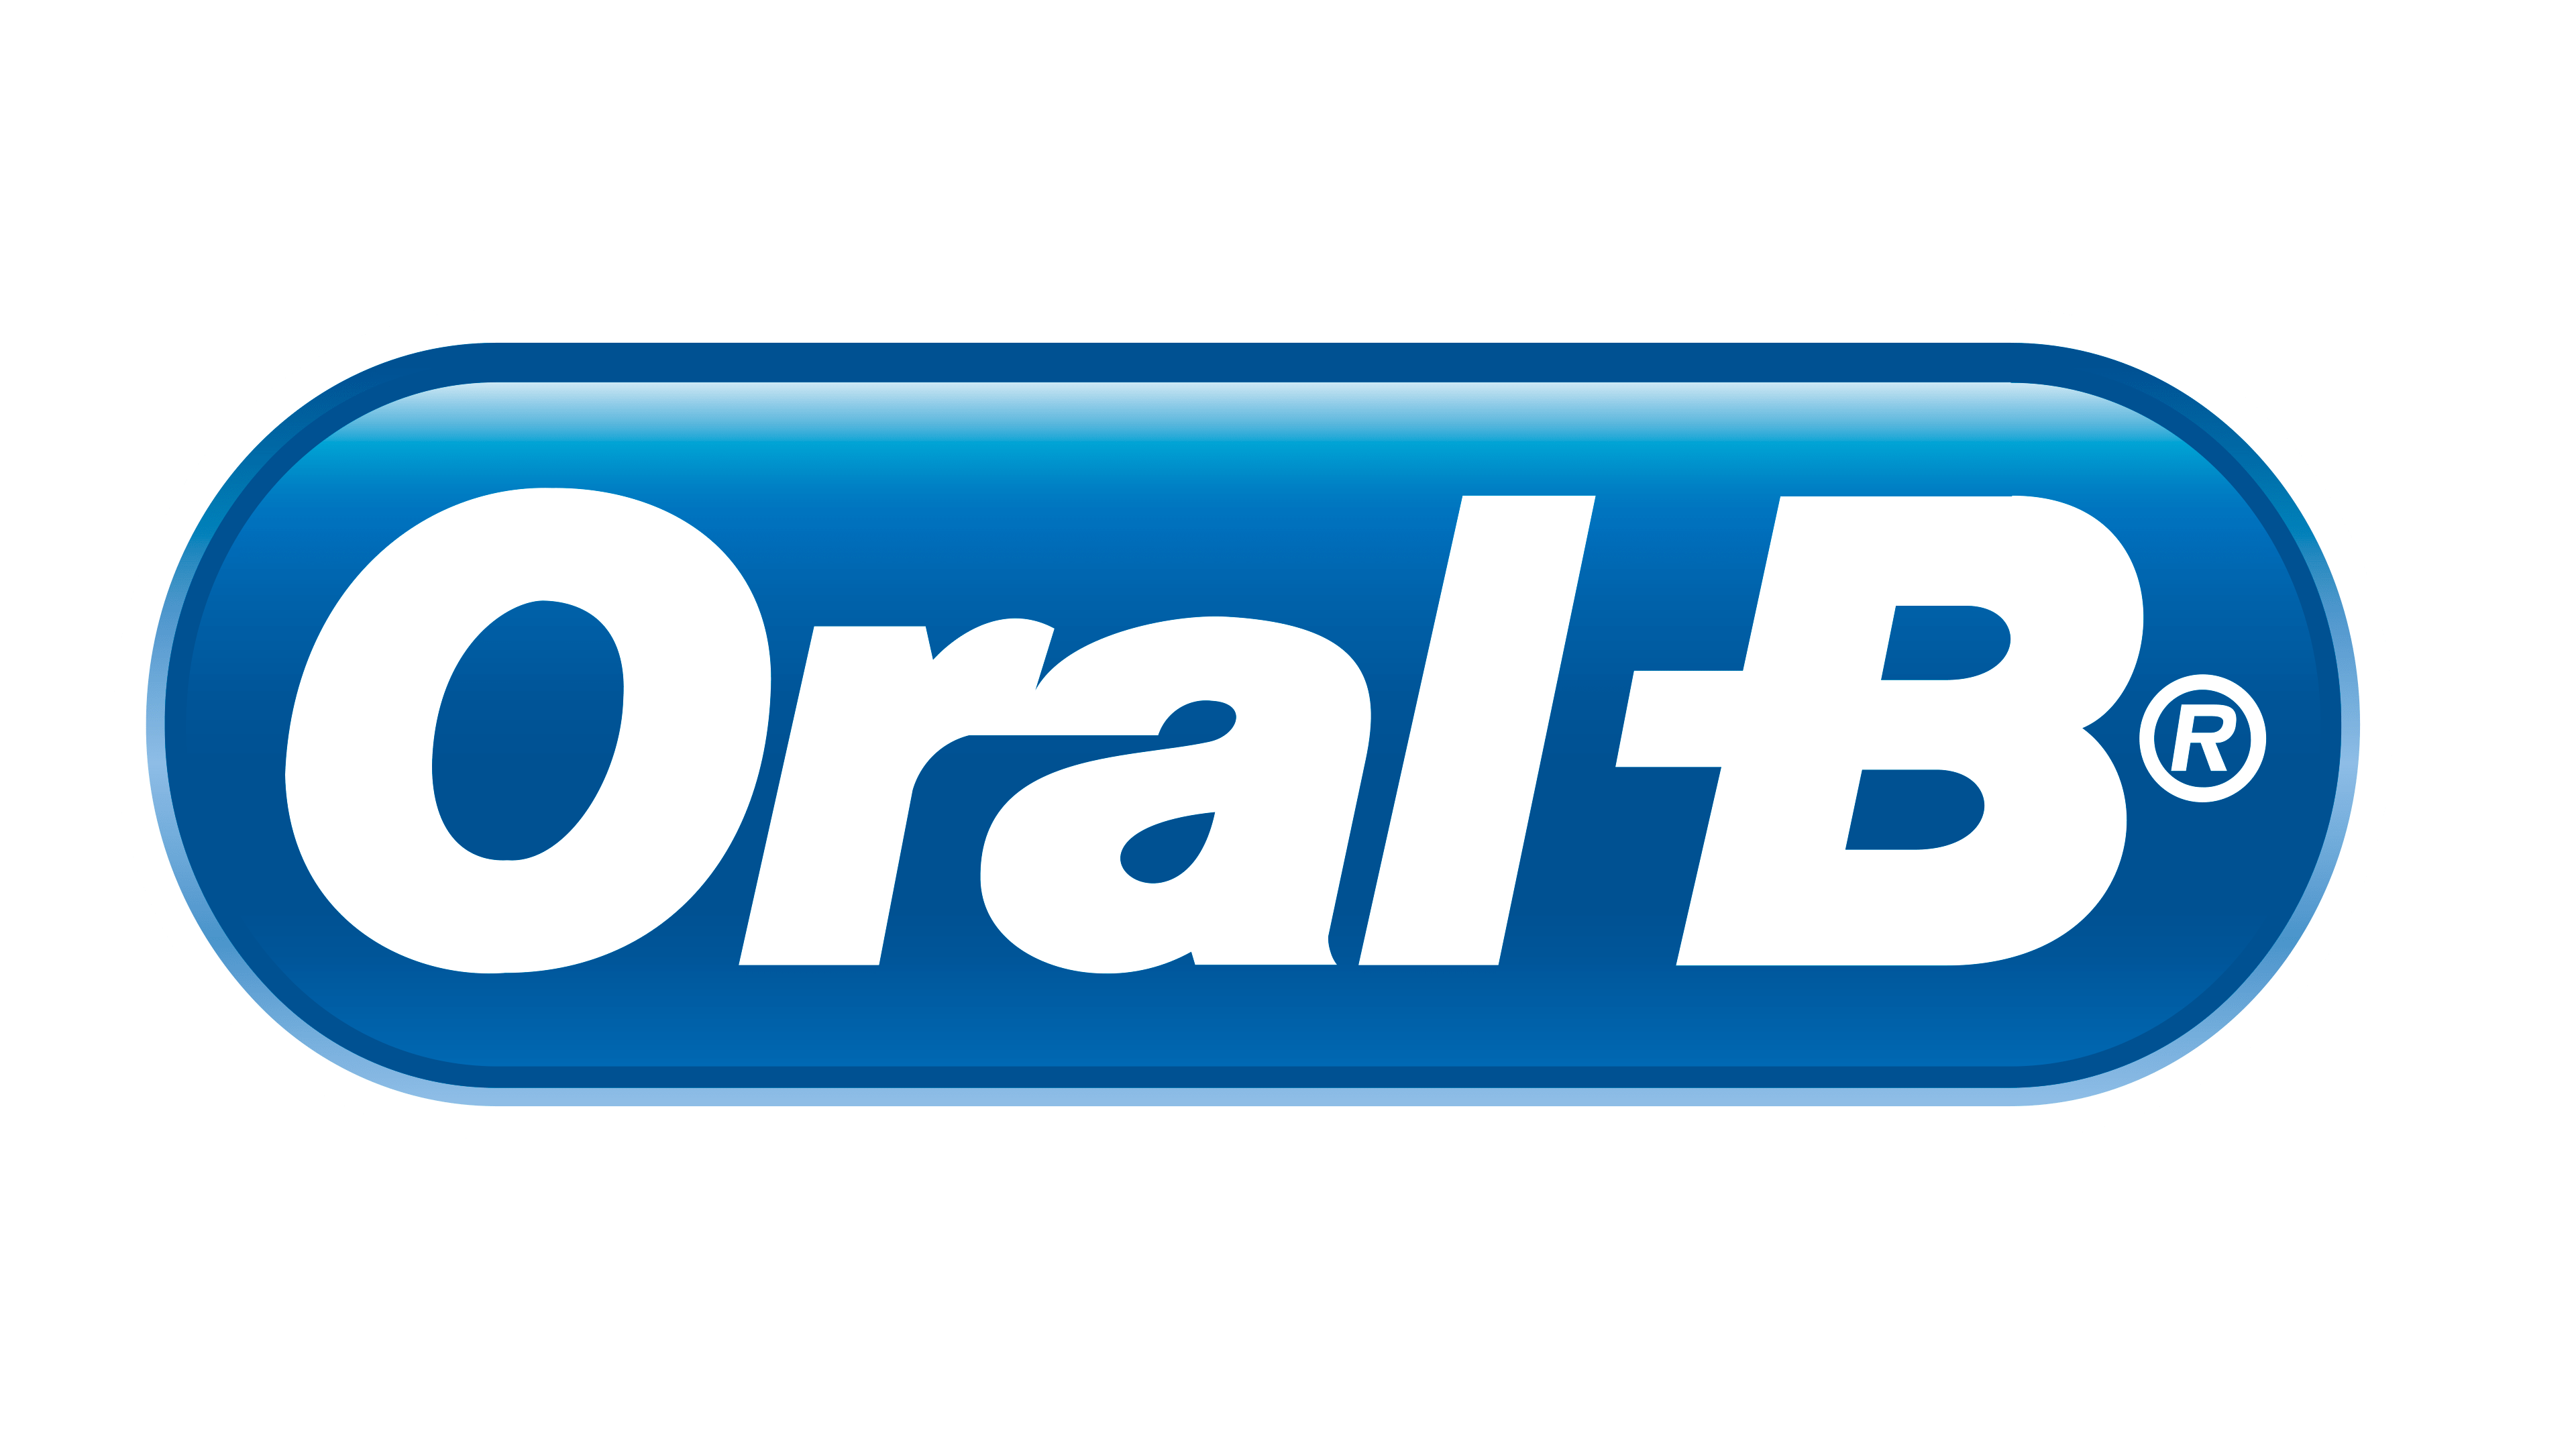 Логотип Oral B